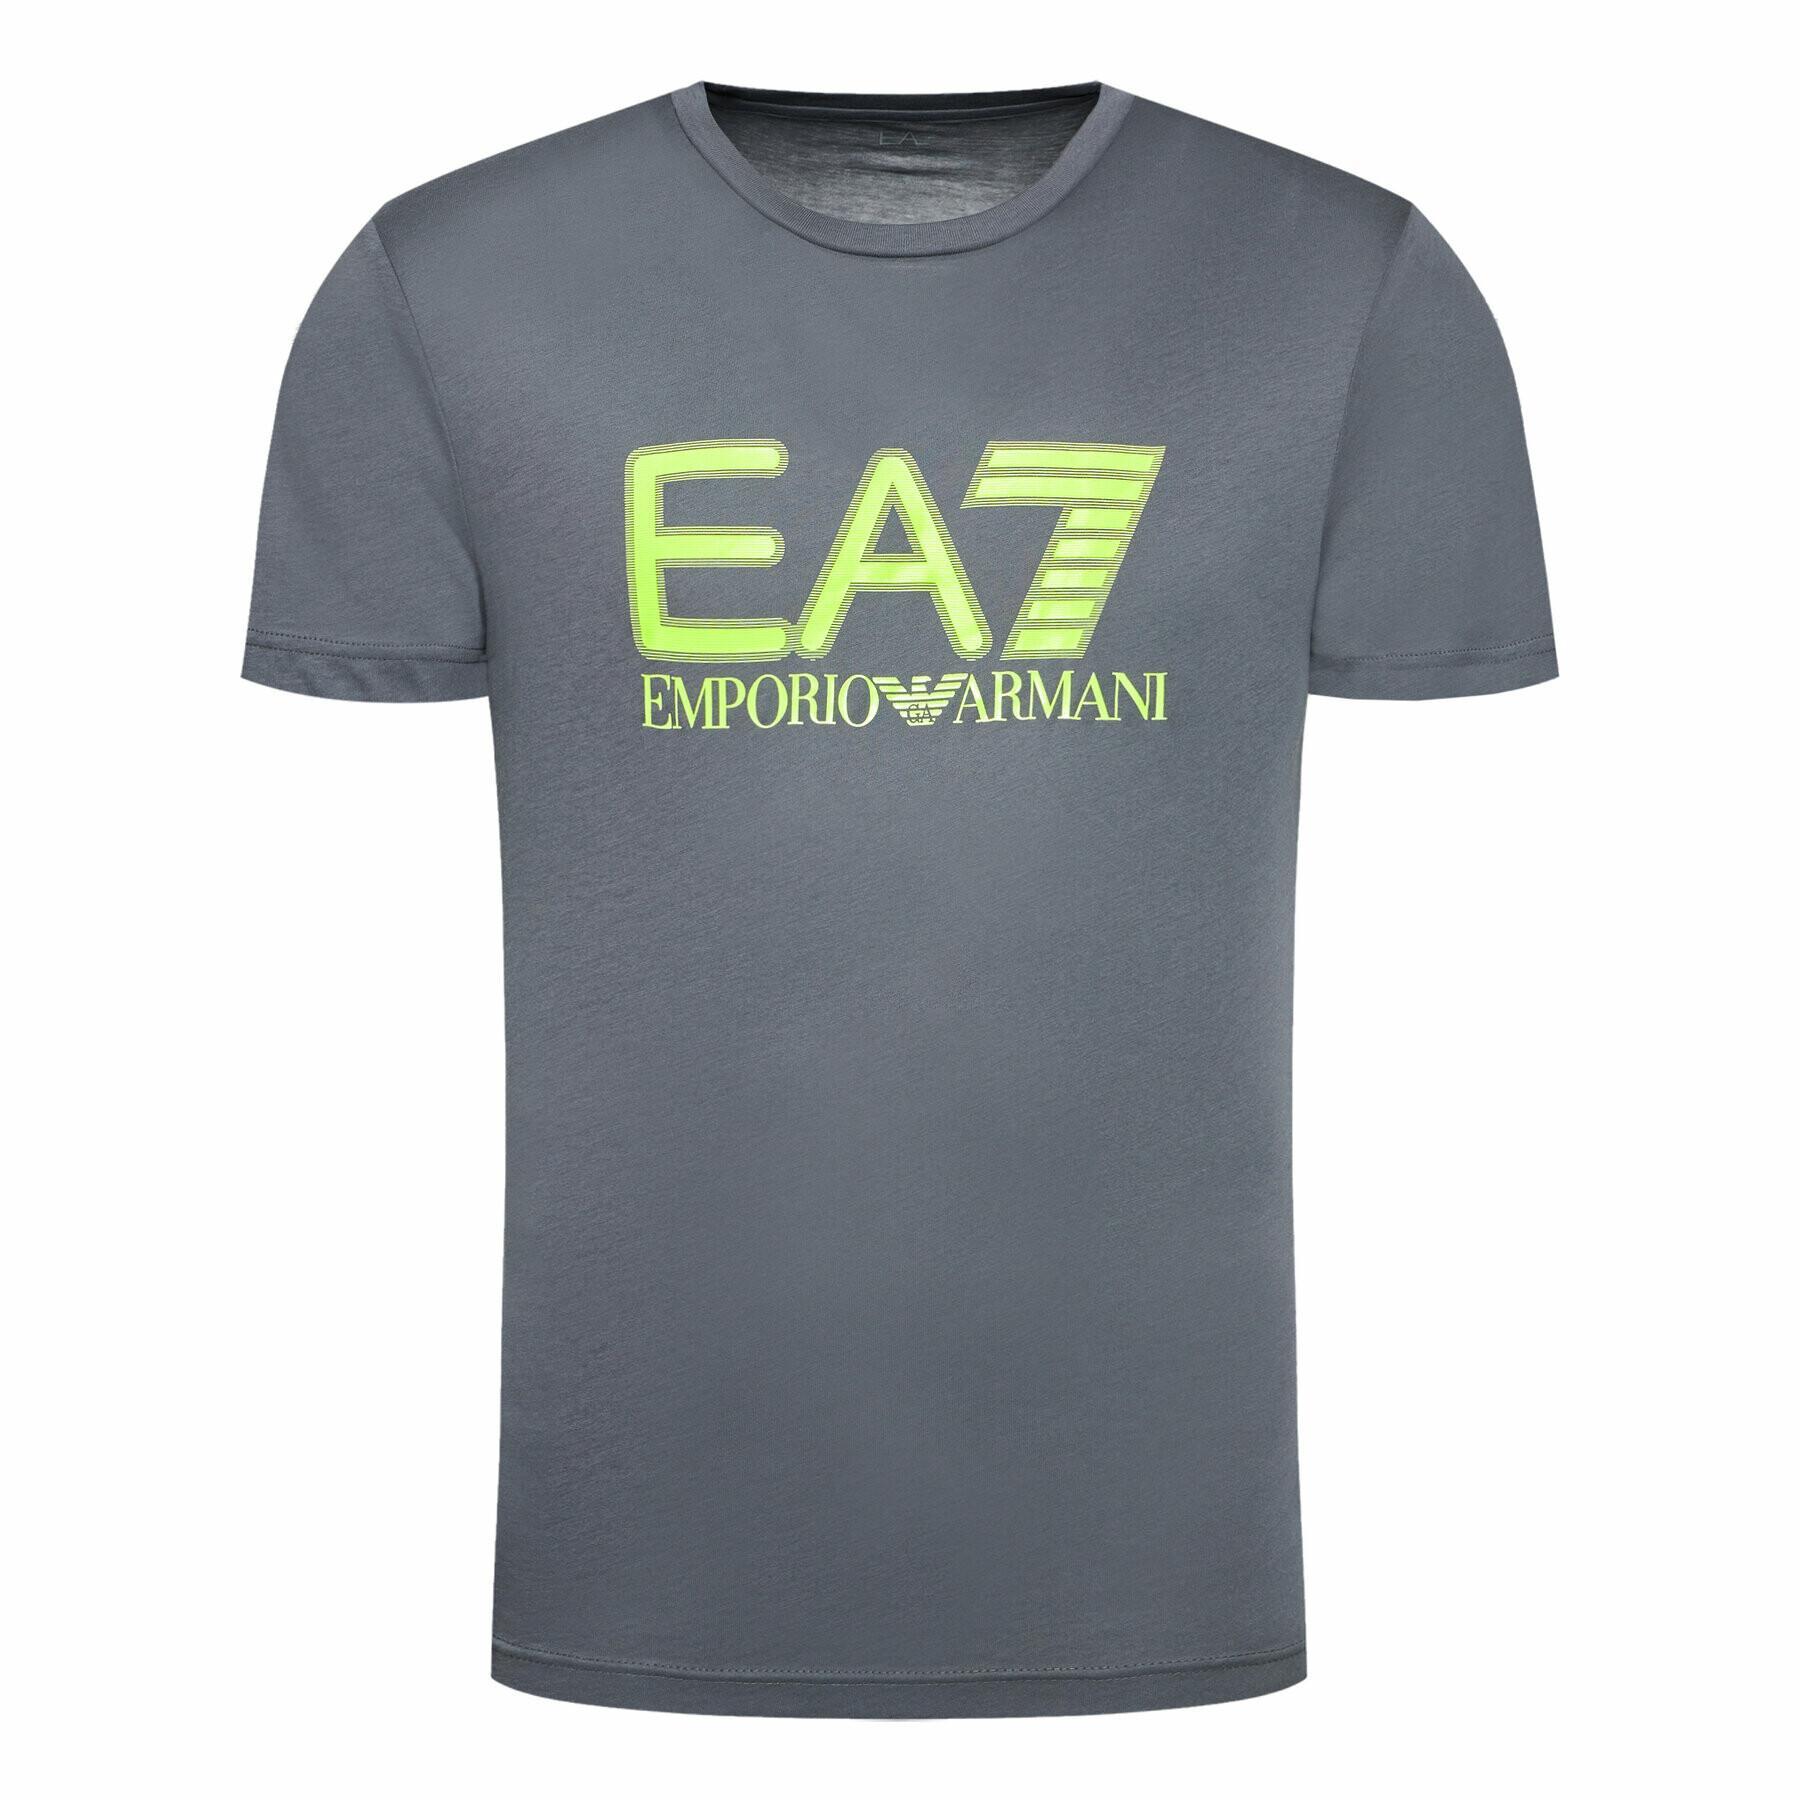 Koszulka EA7 Emporio Armani 6KPT81-PJM9Z gris